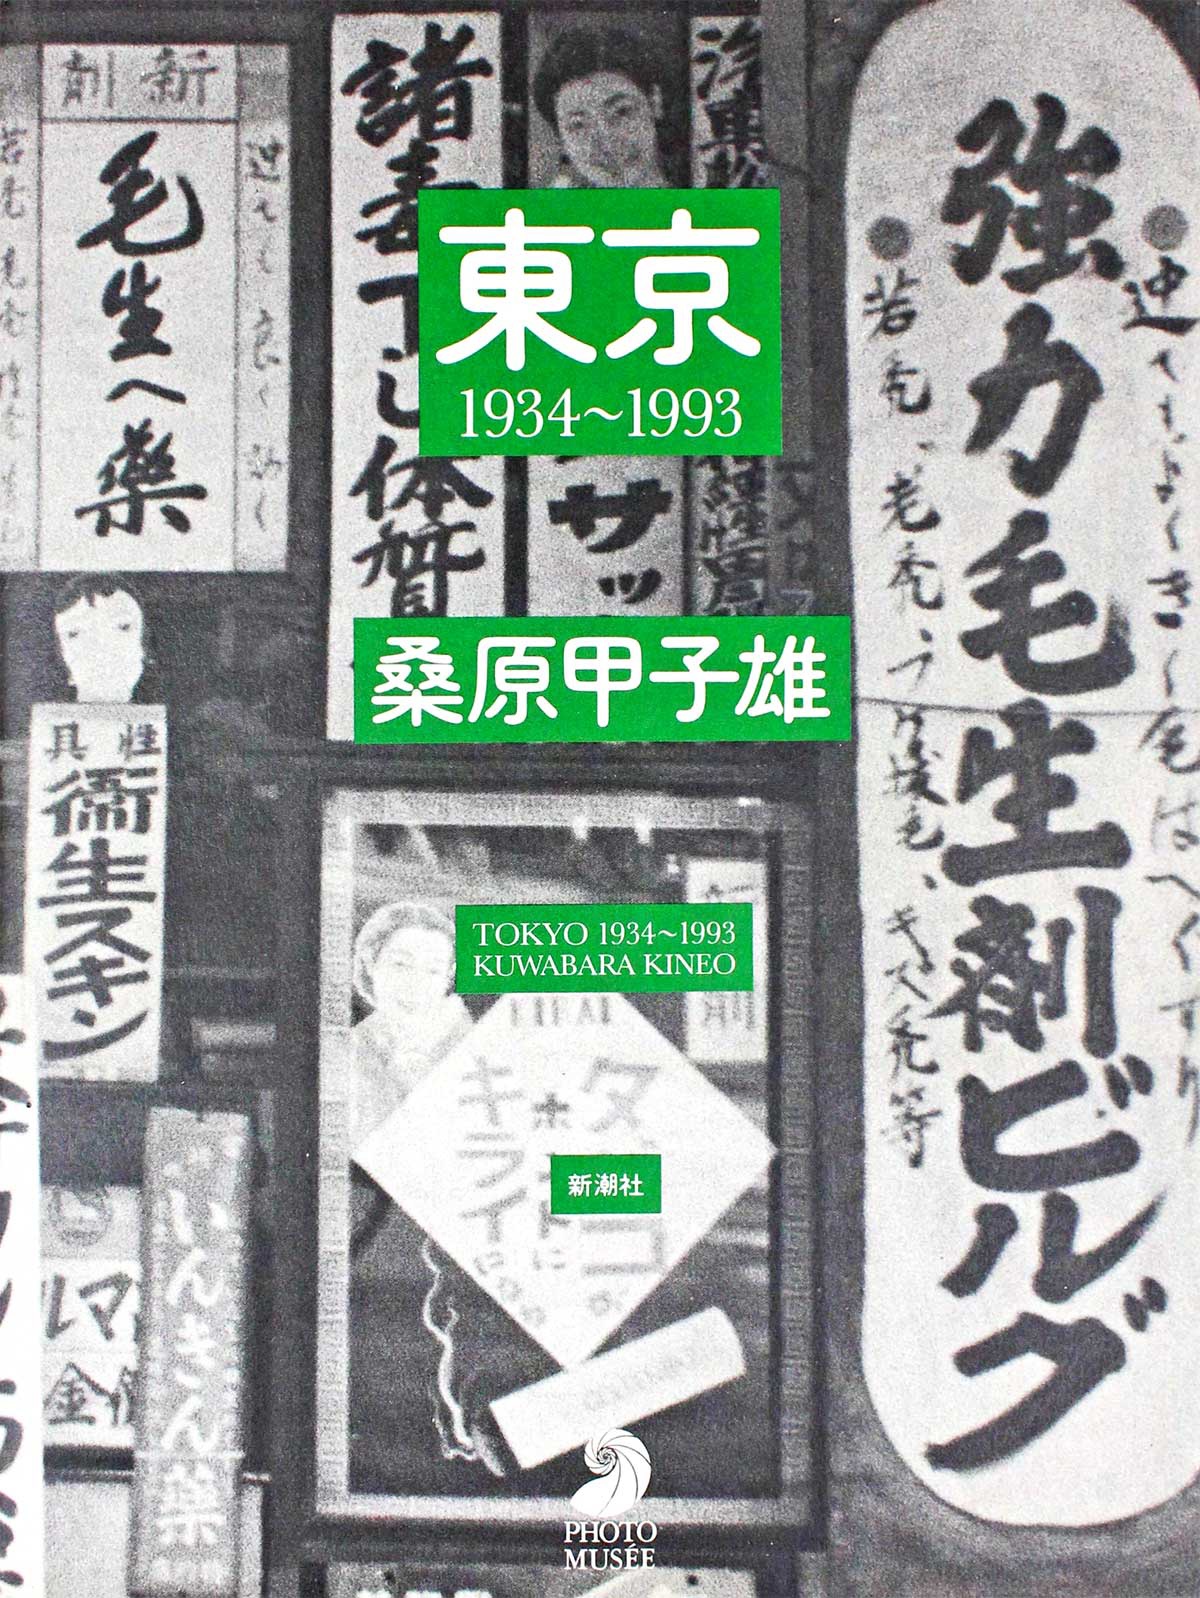 桑原甲子雄「東京1934〜1993」